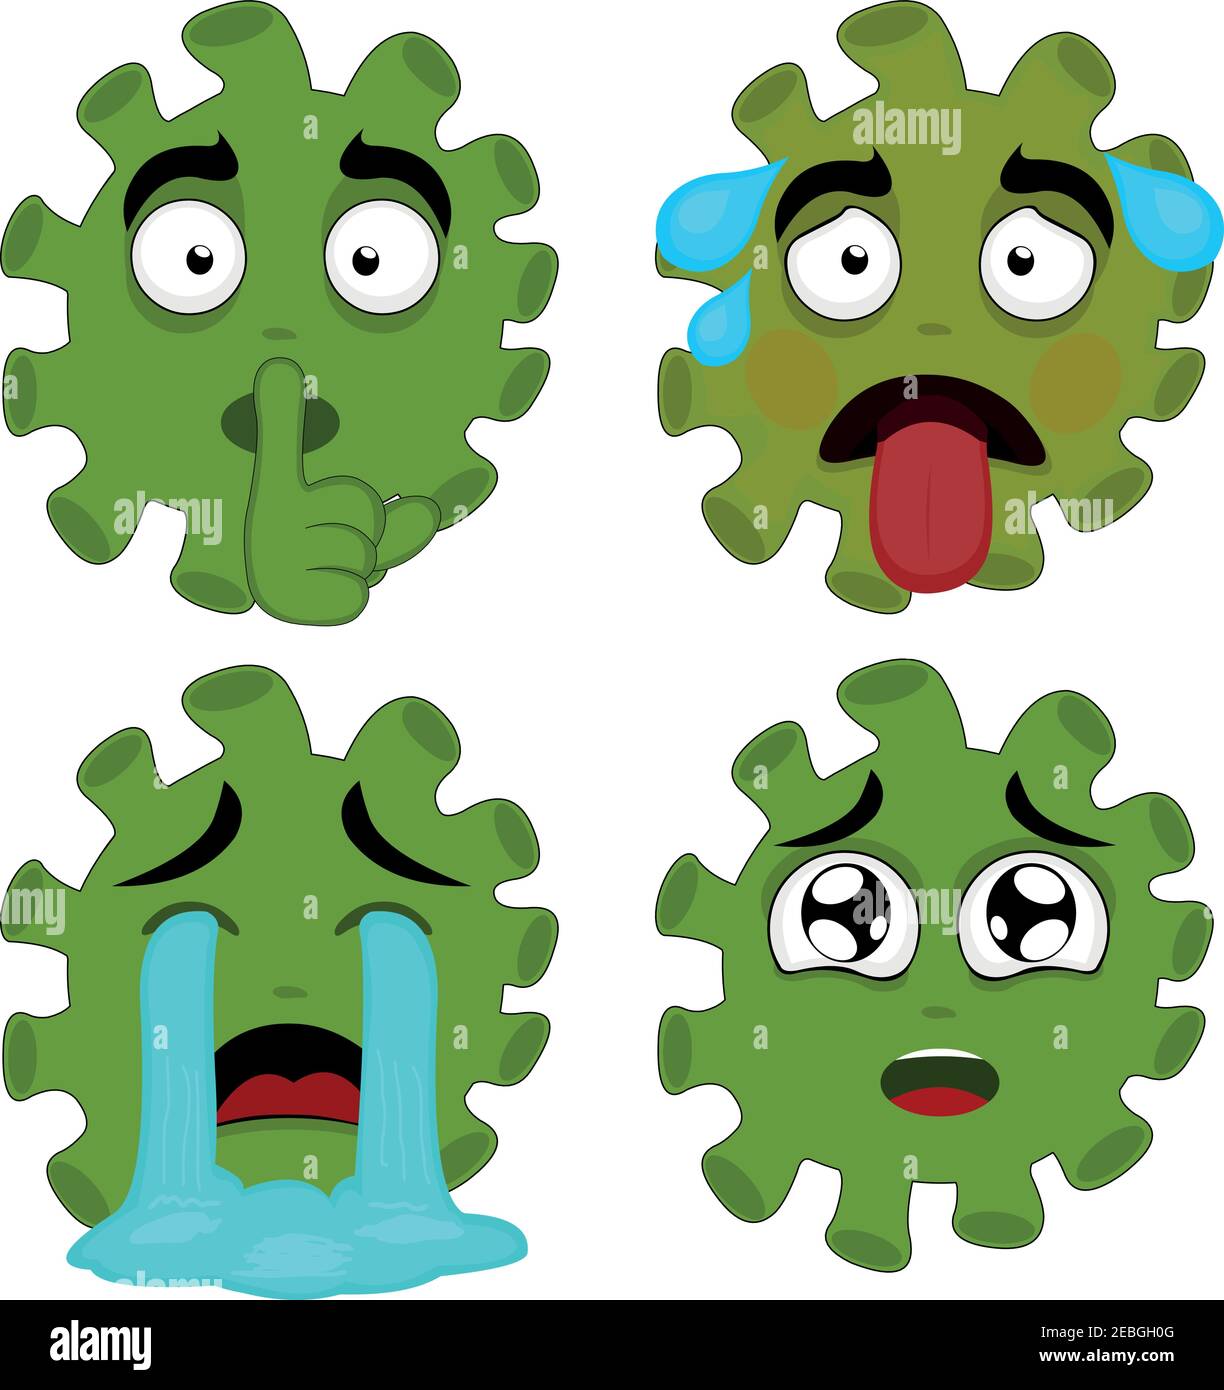 Illustrazione vettoriale delle emoticon di coronavirus Illustrazione Vettoriale